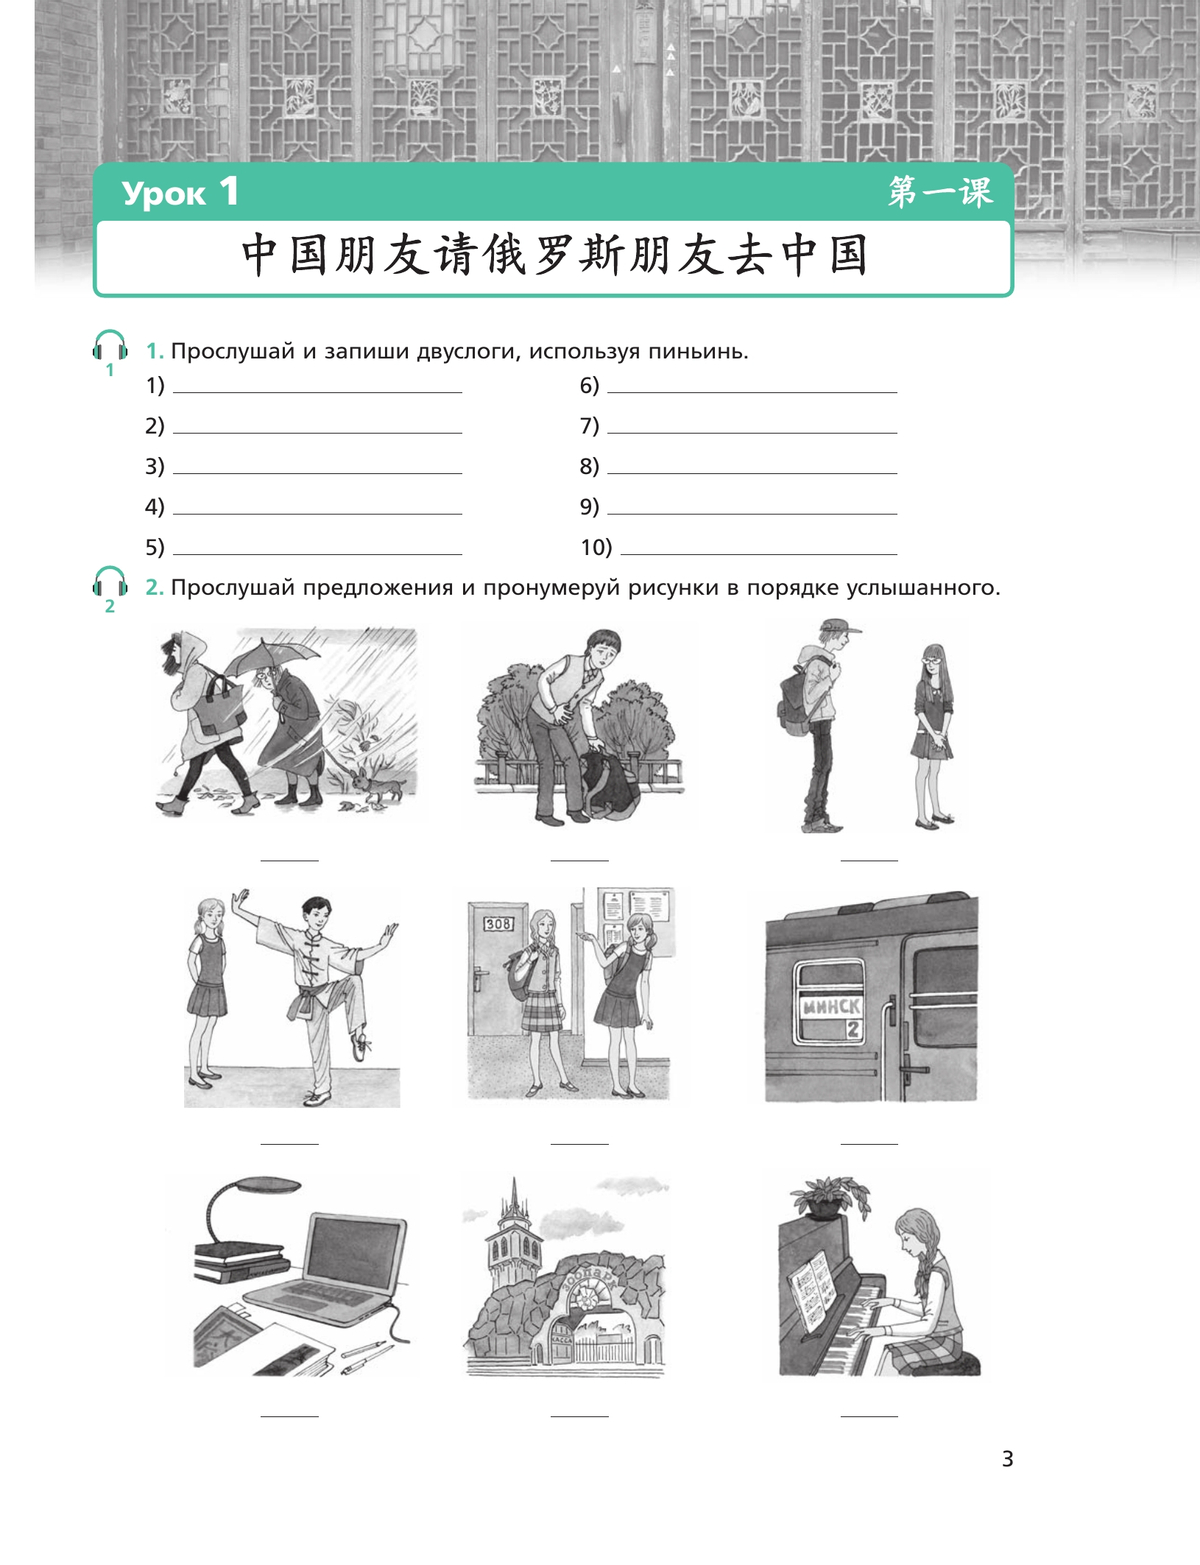 Китайский язык. Второй иностранный язык. Рабочая тетрадь. 8 класс 5